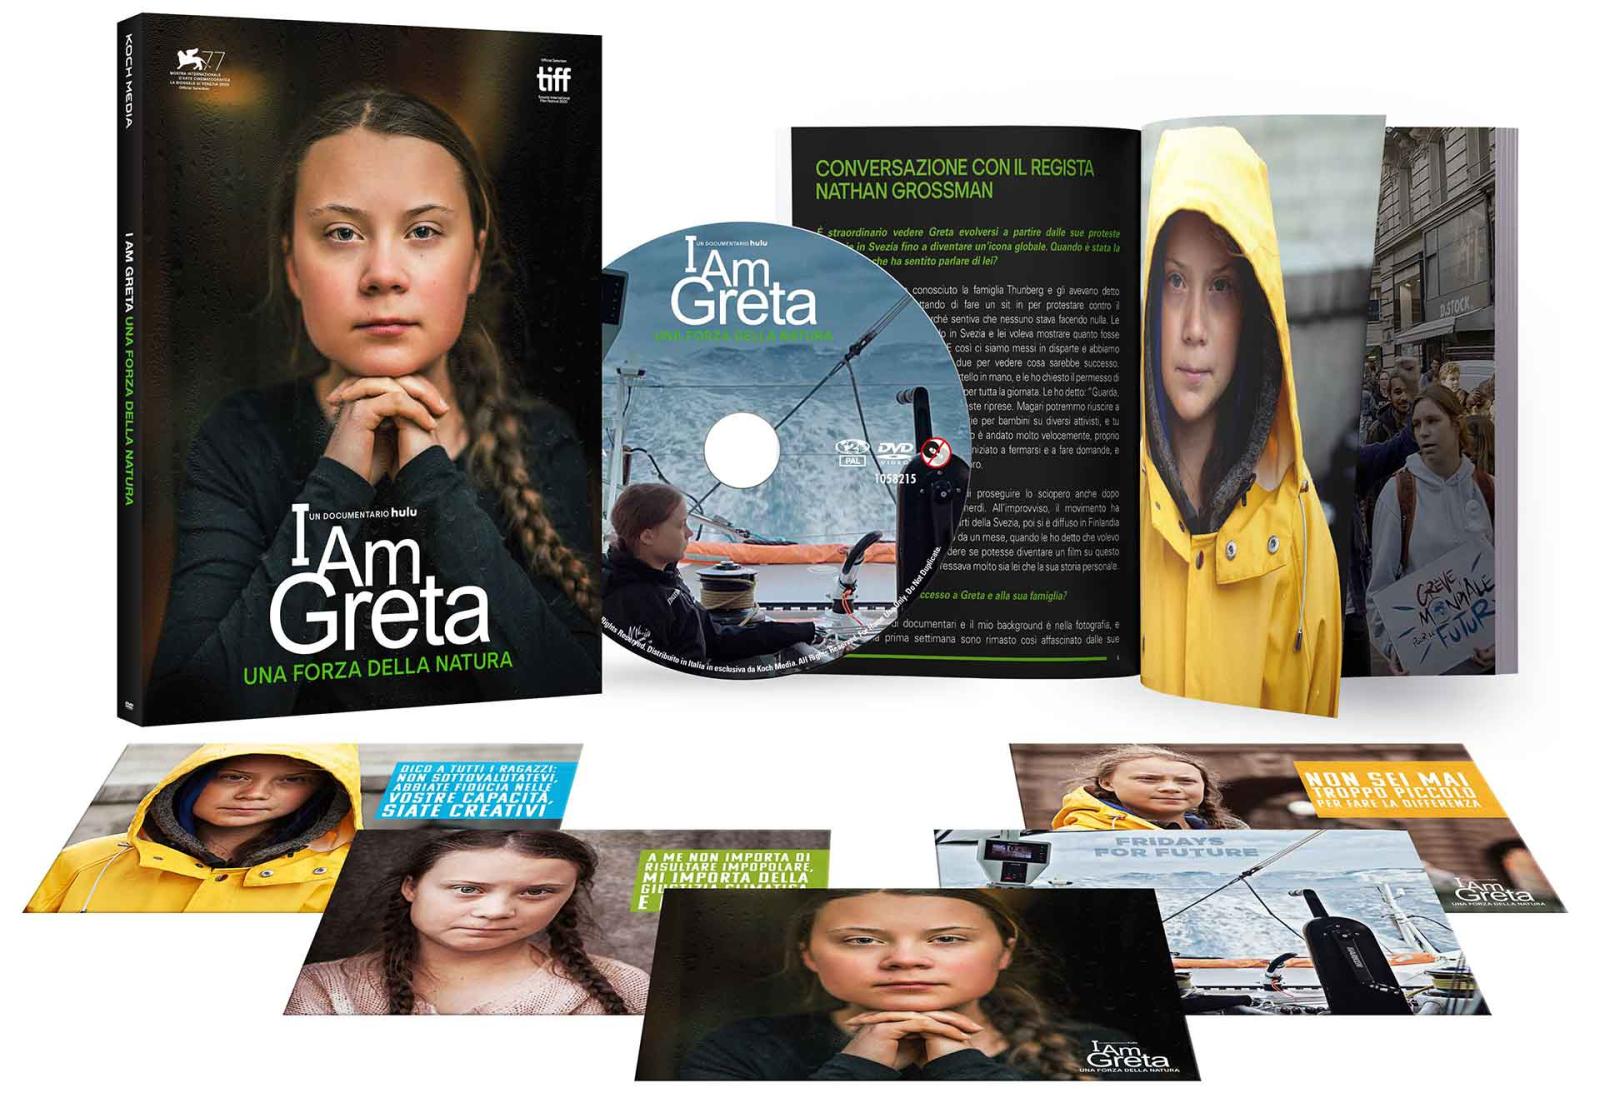 I Am Greta - Una Forza della Natura - DVD + Booklet + Cards (DVD) Image 4